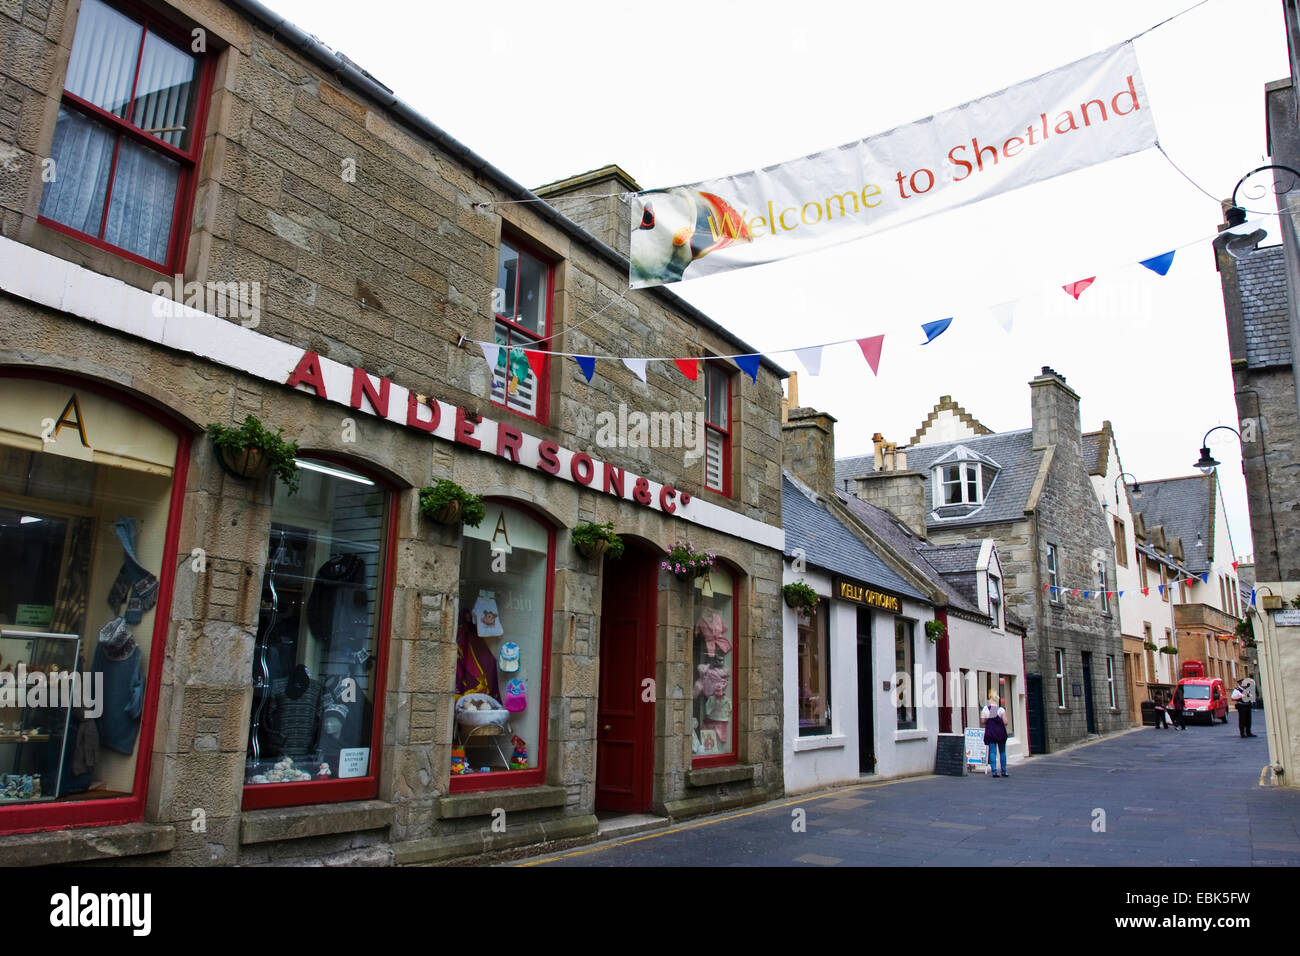 Straße in Lewick mit Fahne "Willkommen in Shetland", Vereinigtes Königreich, Schottland, Shetland-Inseln Stockfoto